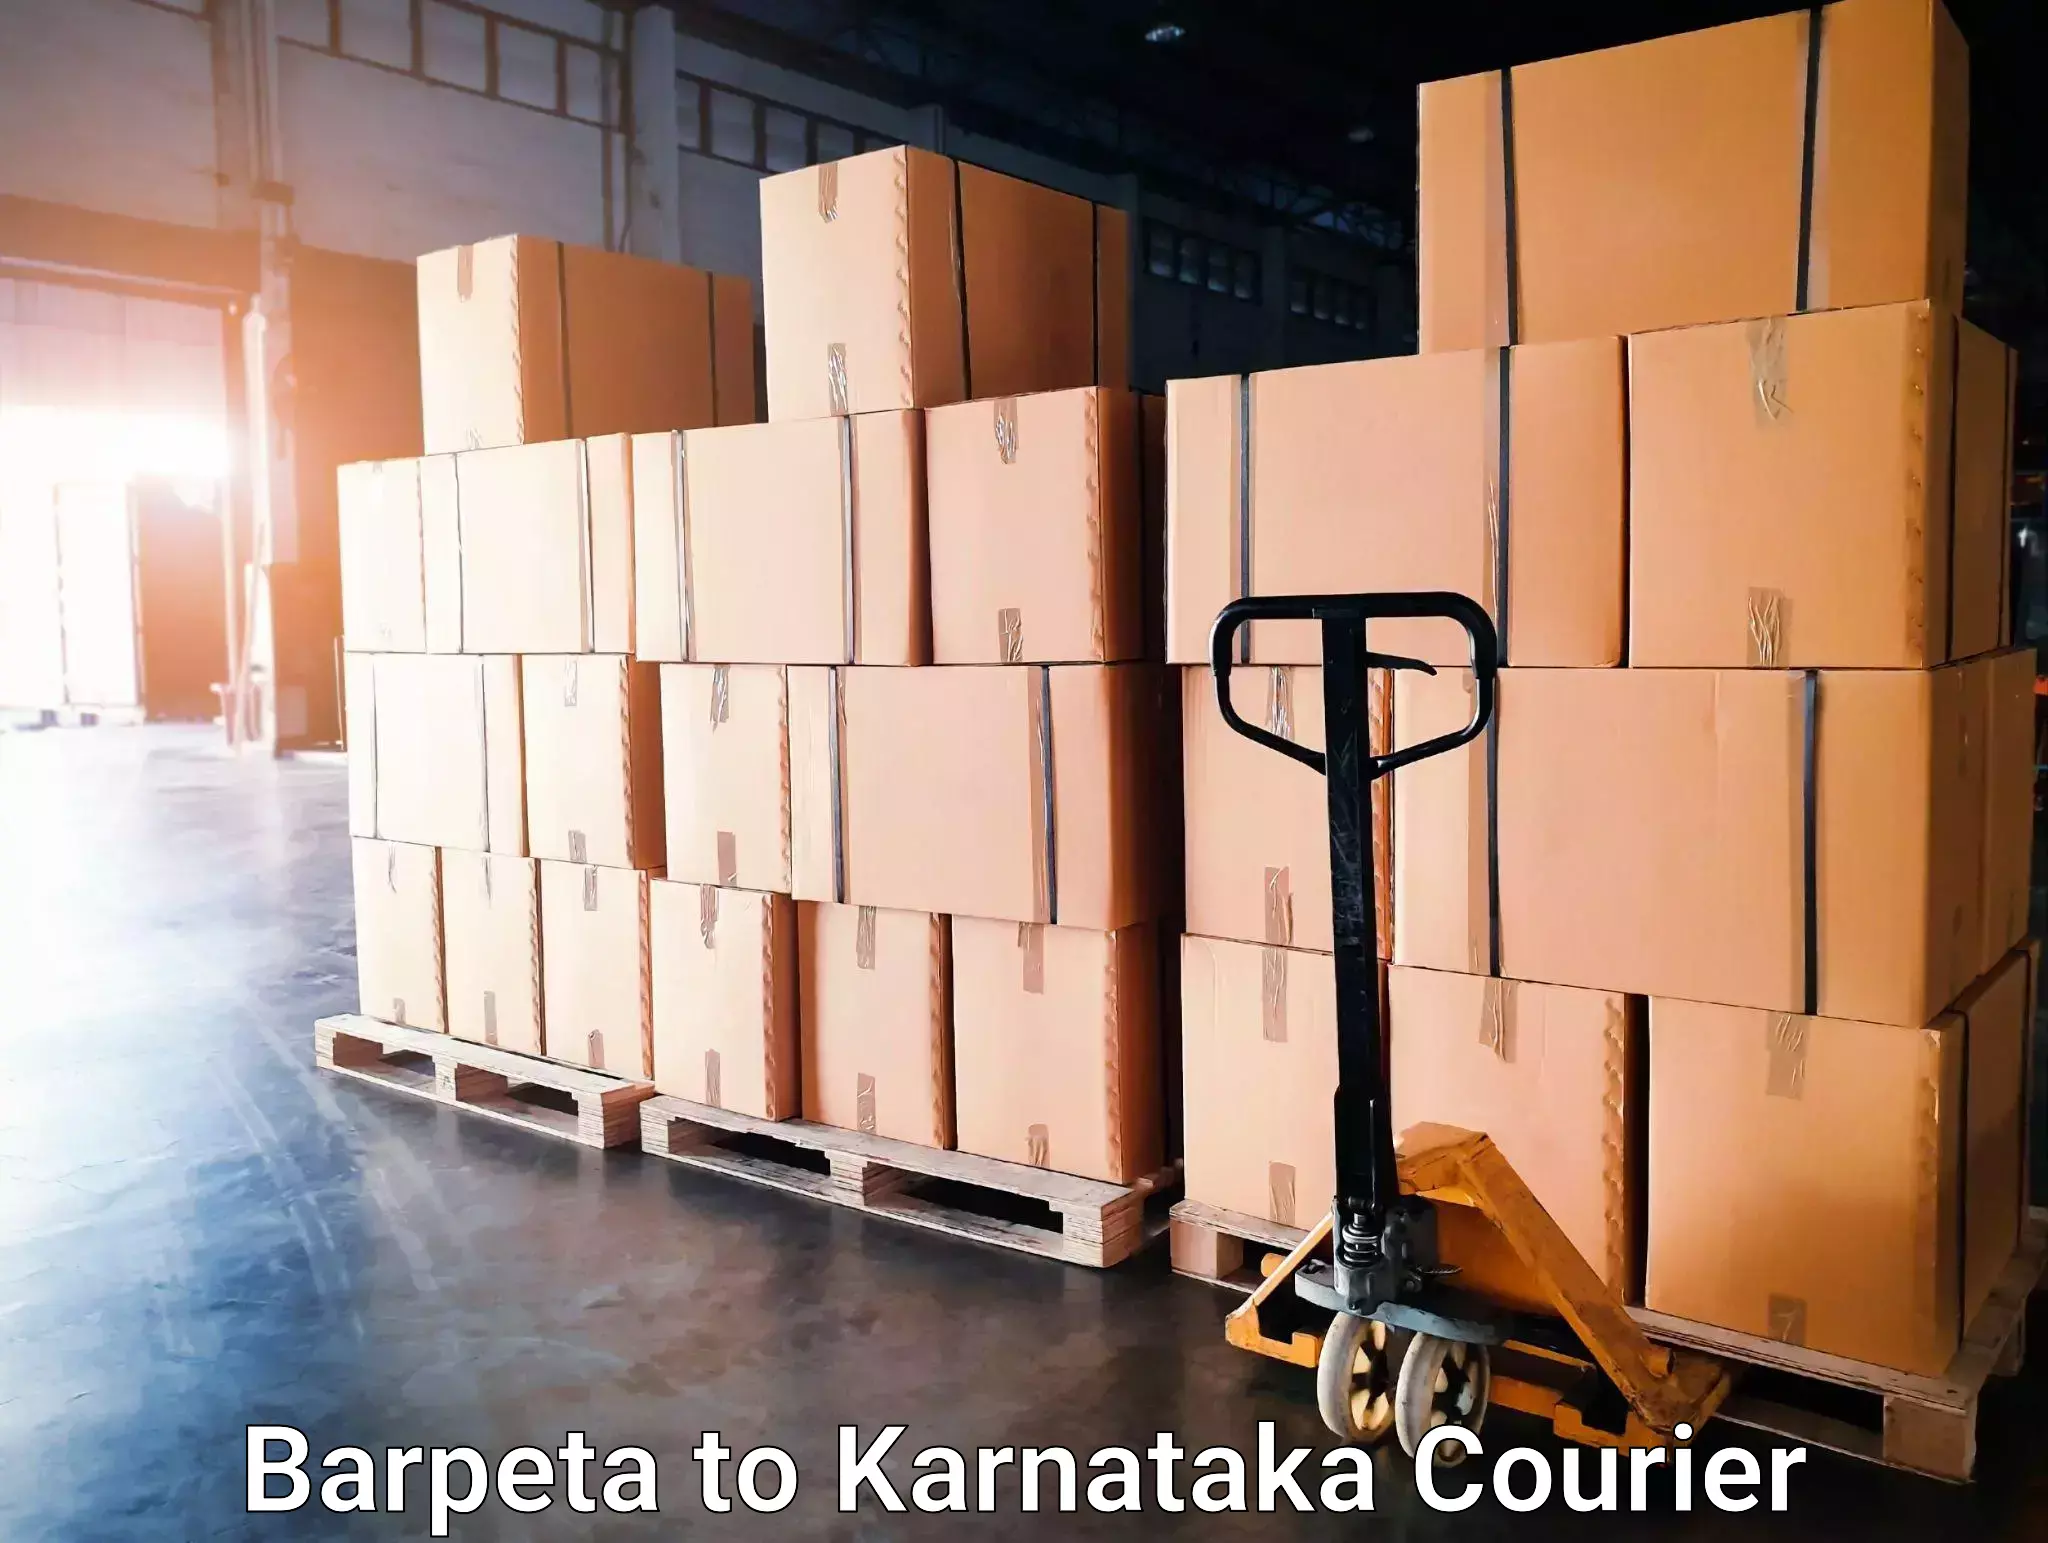 Customer-focused courier Barpeta to Hiriyur